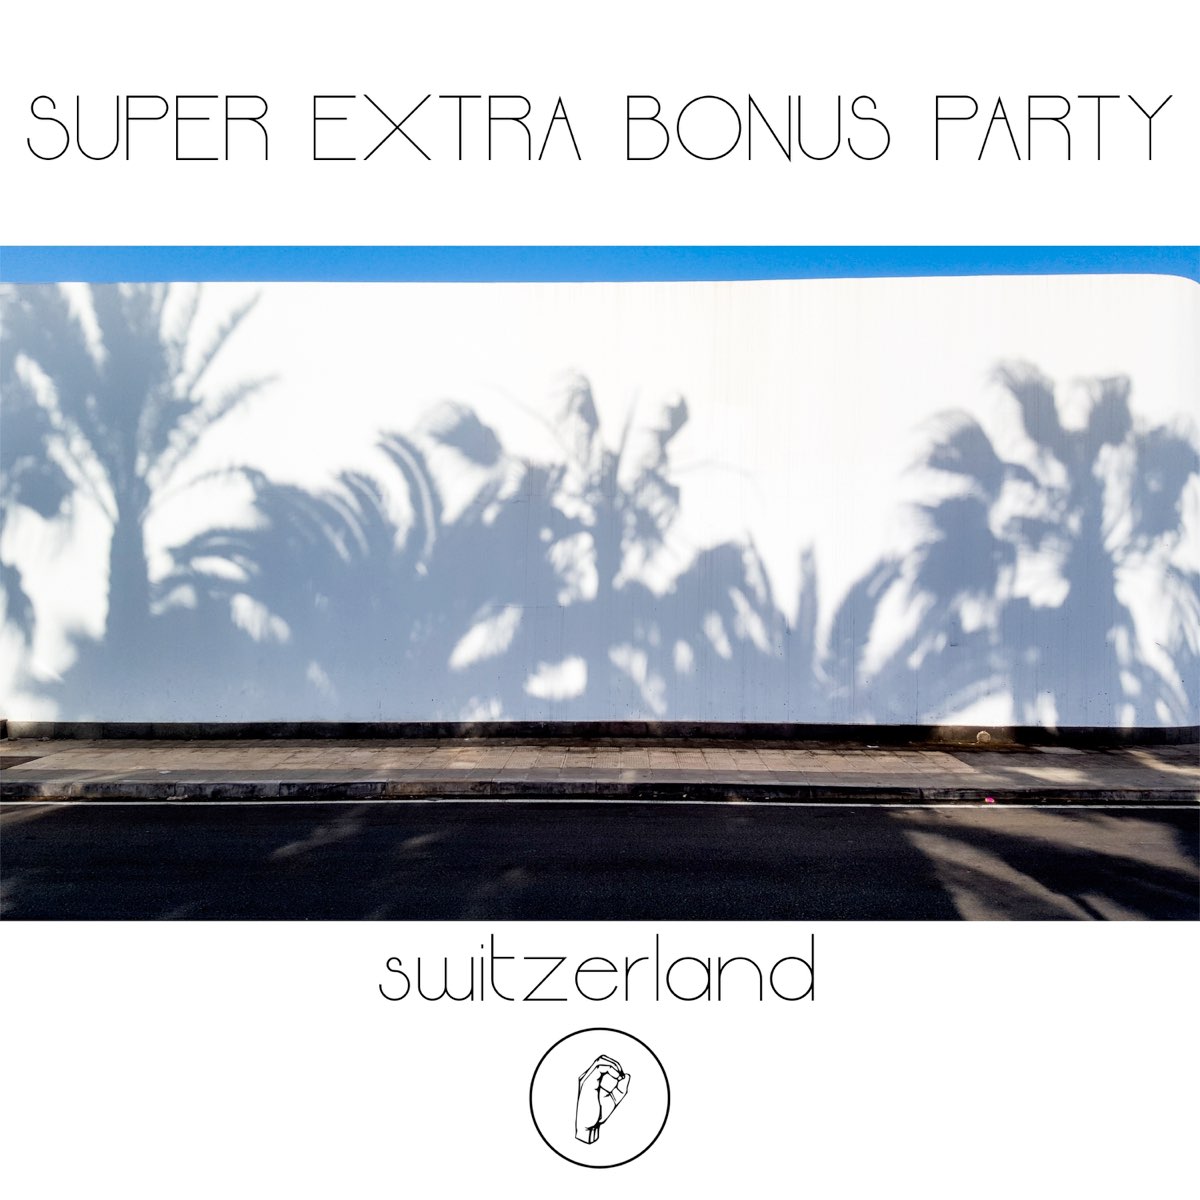 Super Extra Bonus Party. Bonus party